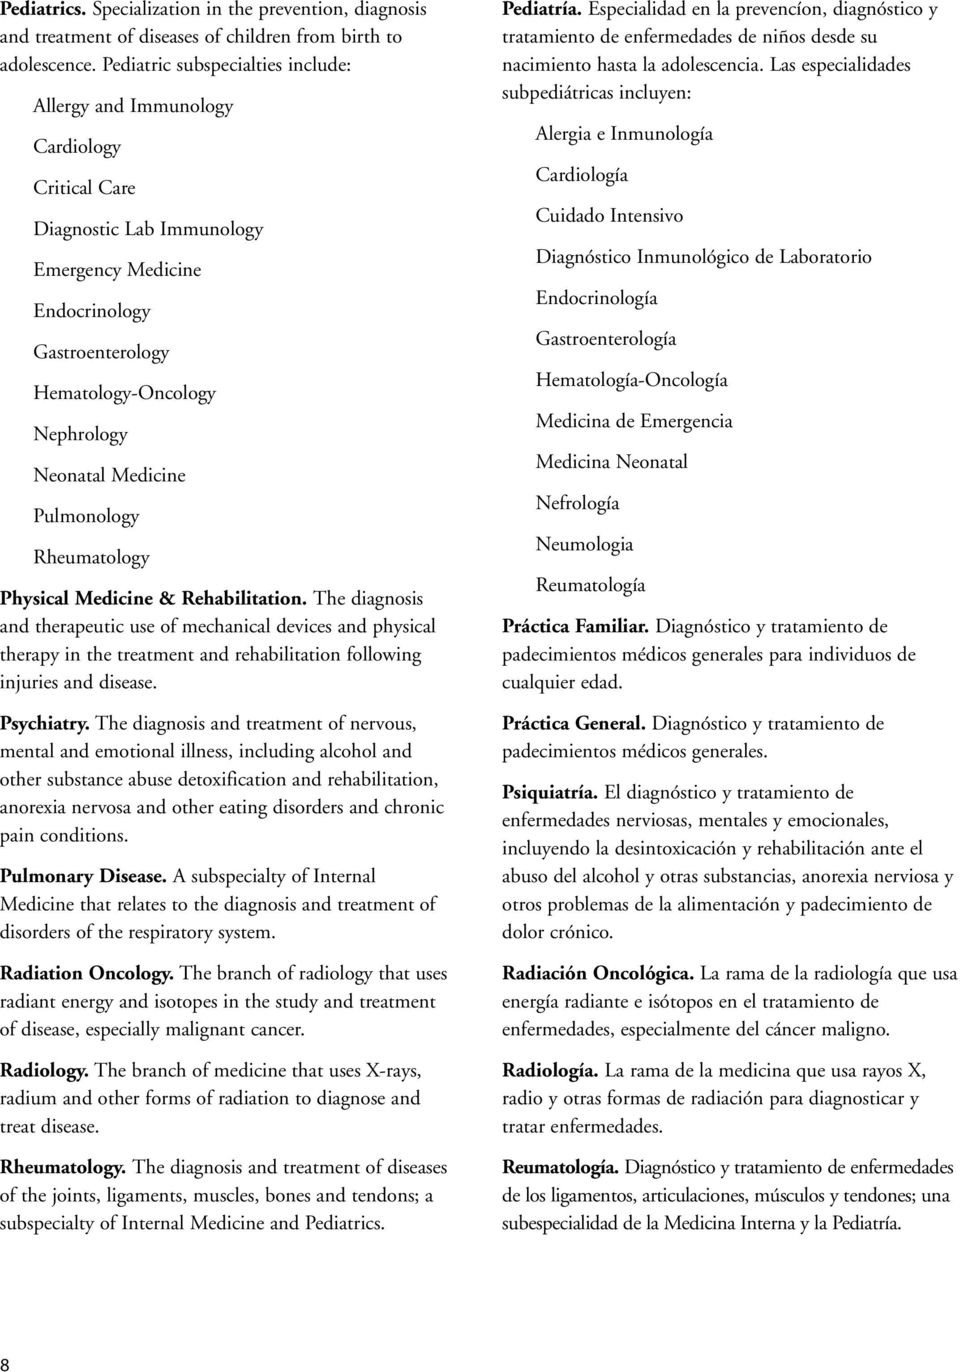 Medicine Pulmonology Rheumatology Physical Medicine & Rehabilitation.